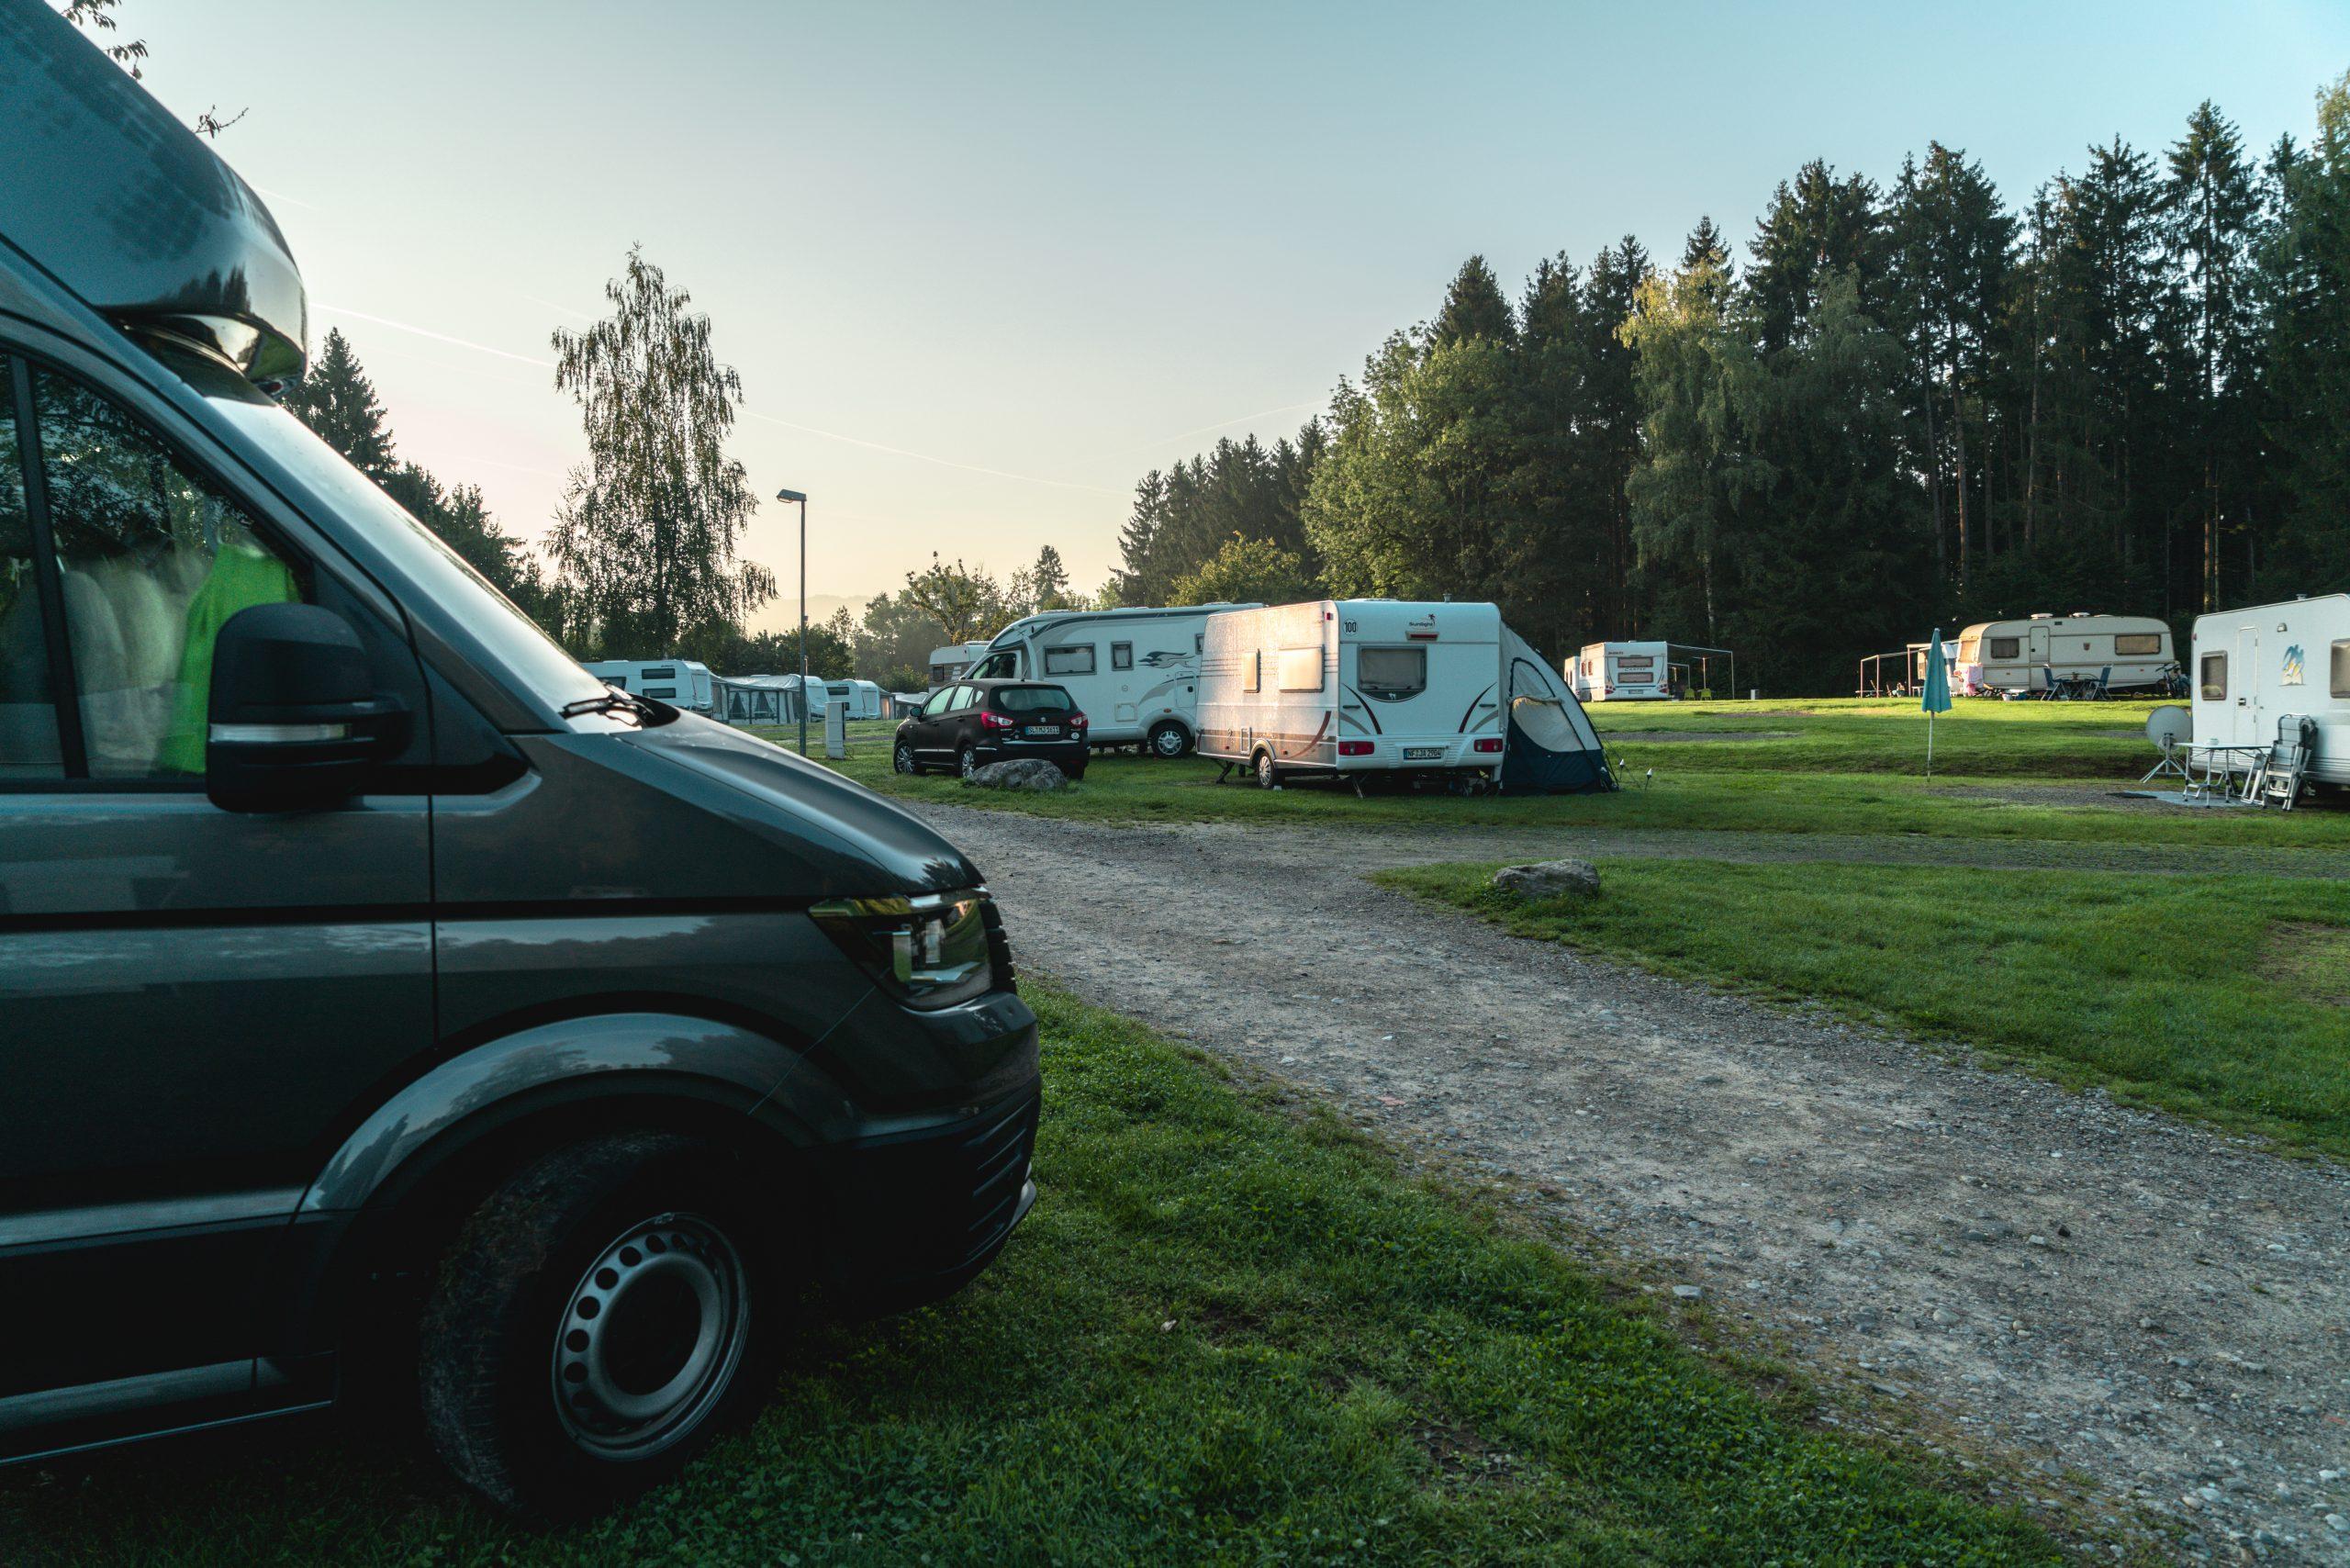 L'Allemagne dispose de nombreux et magnifiques campings pour des vacances en camping parfaites.